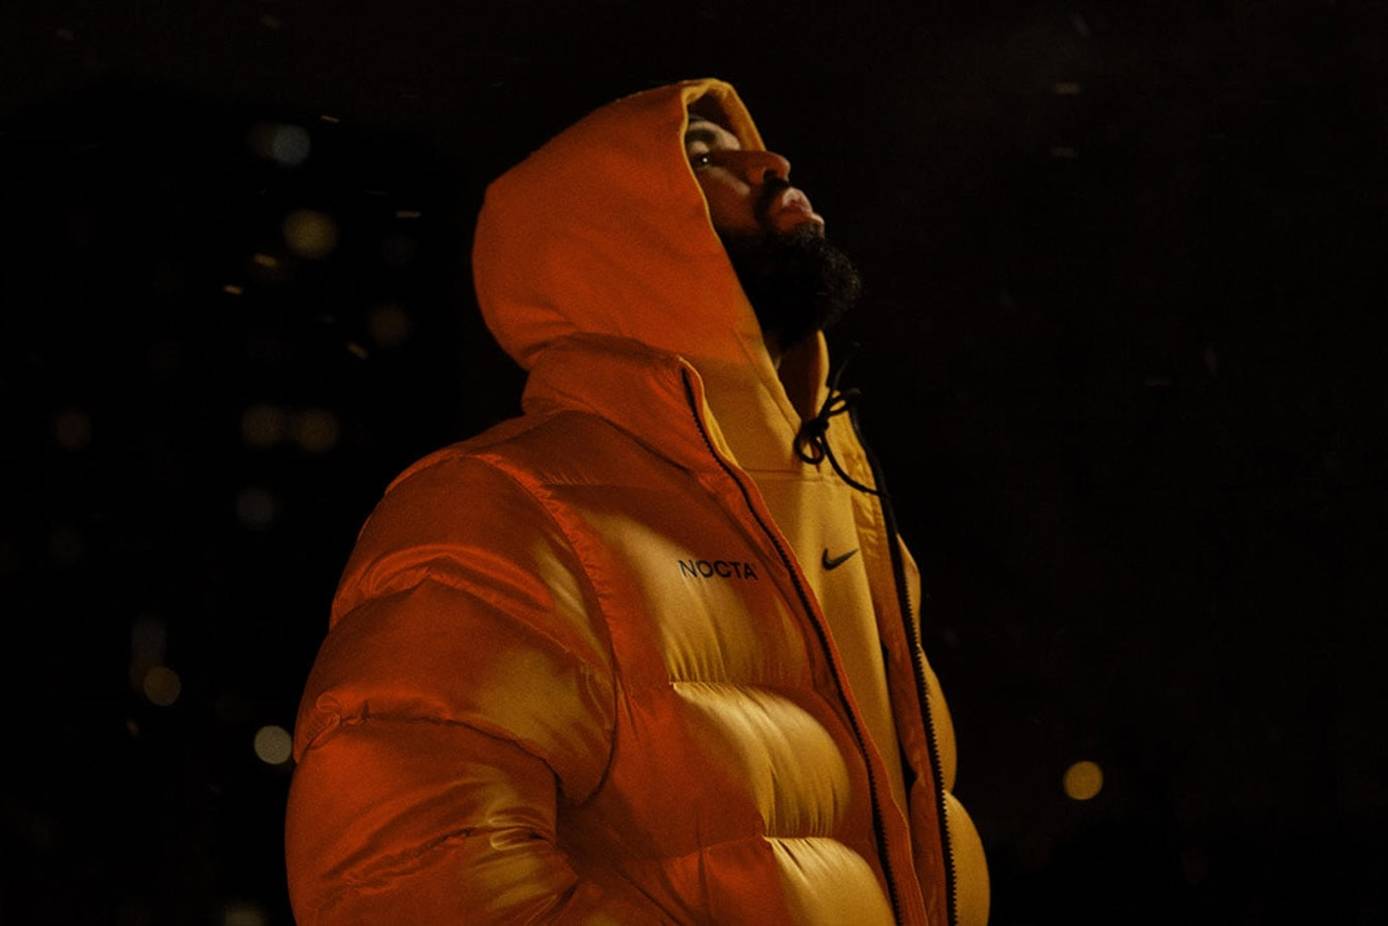 Nike y lanza “Nocta”, su firma junto al rapero Drake